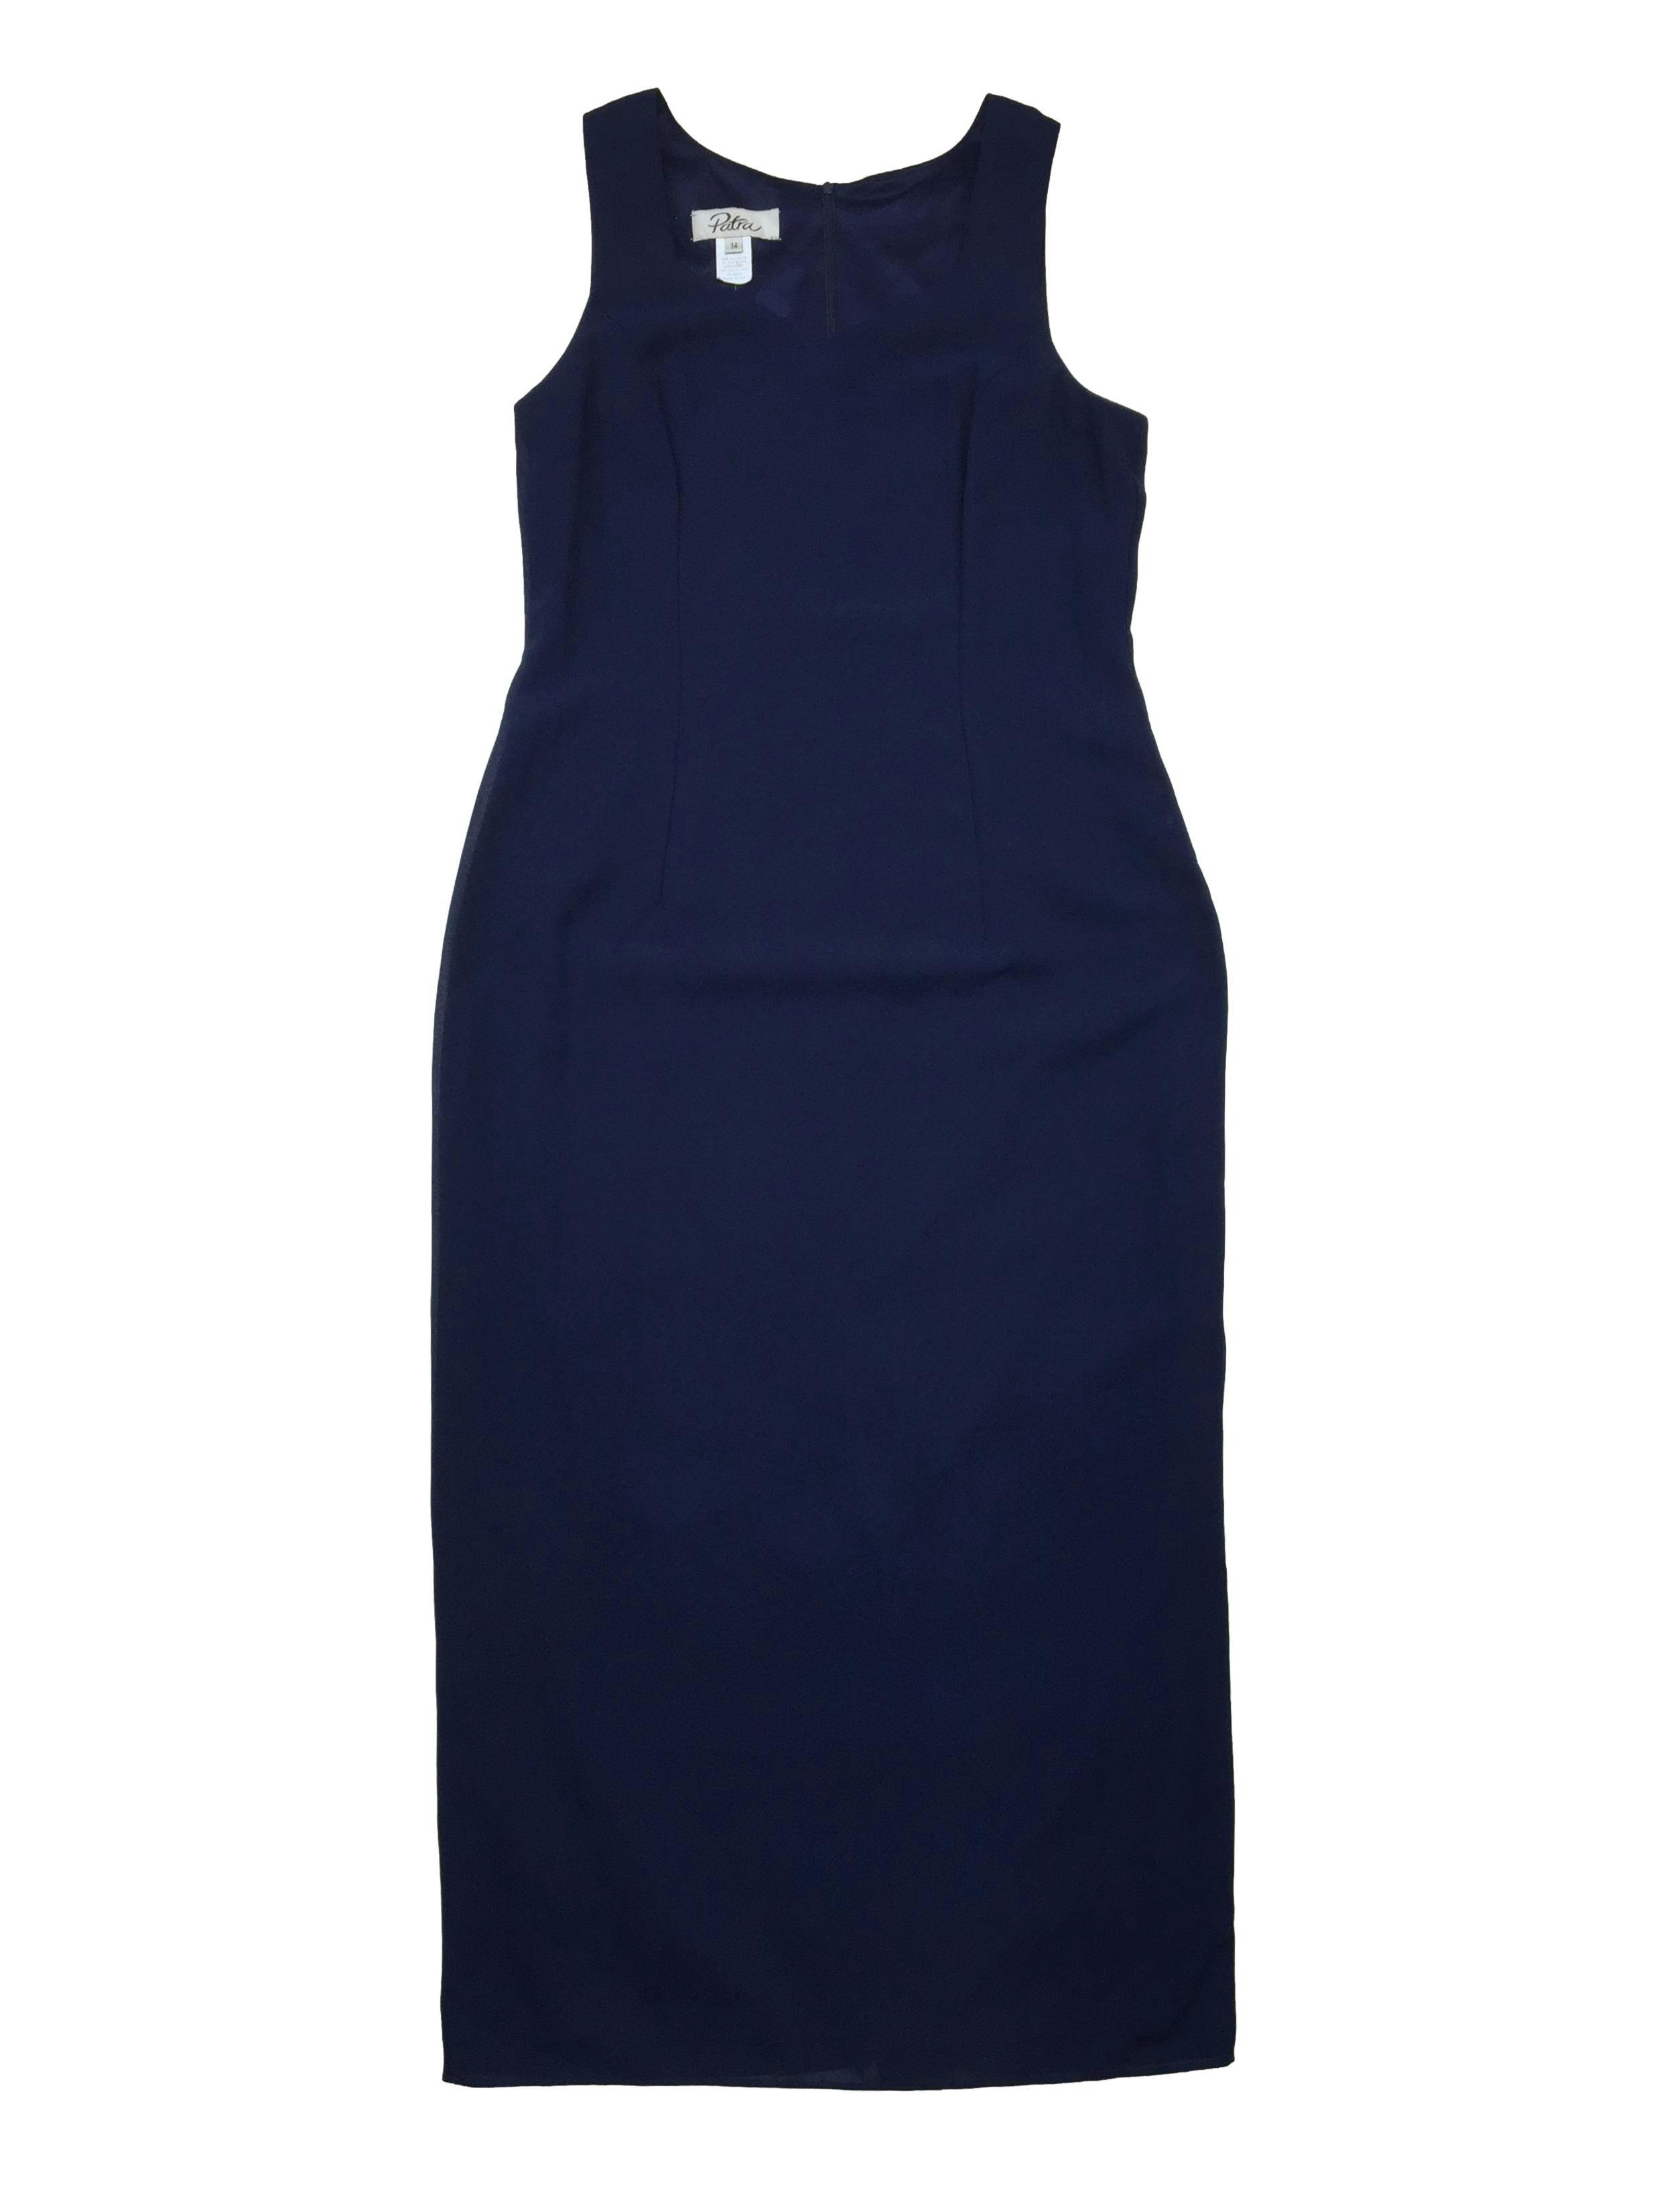 Vestido largo de crepé azul marino, forrado, cierre invisible en la espalda y abertura en la basta. Busto 105 Largo 140cm